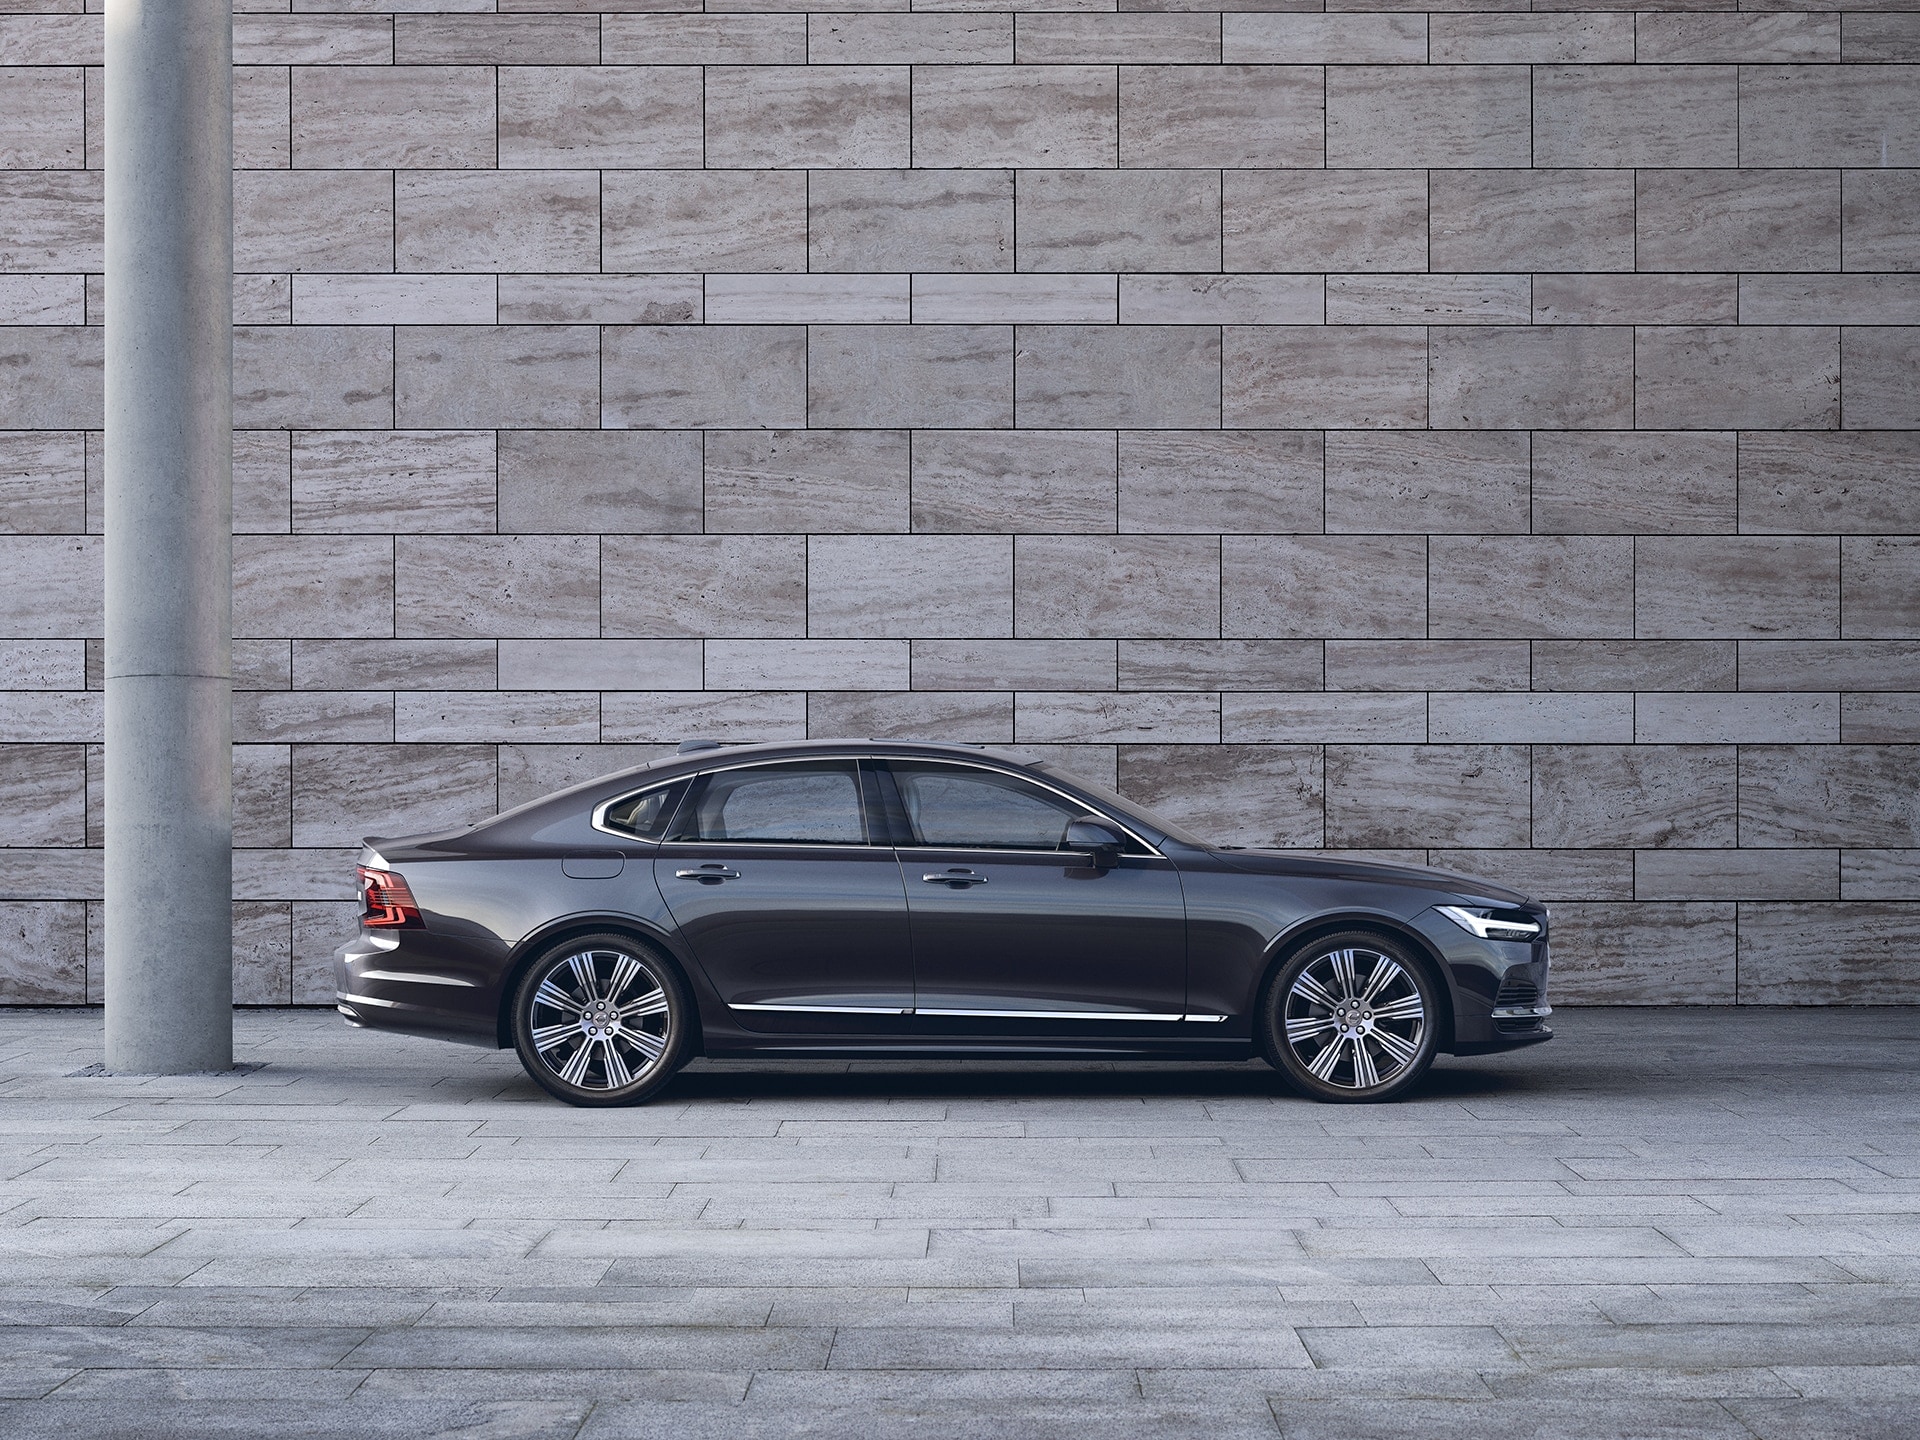 Een donkerkleurige Volvo S90 staat geparkeerd voor een grijze muur.